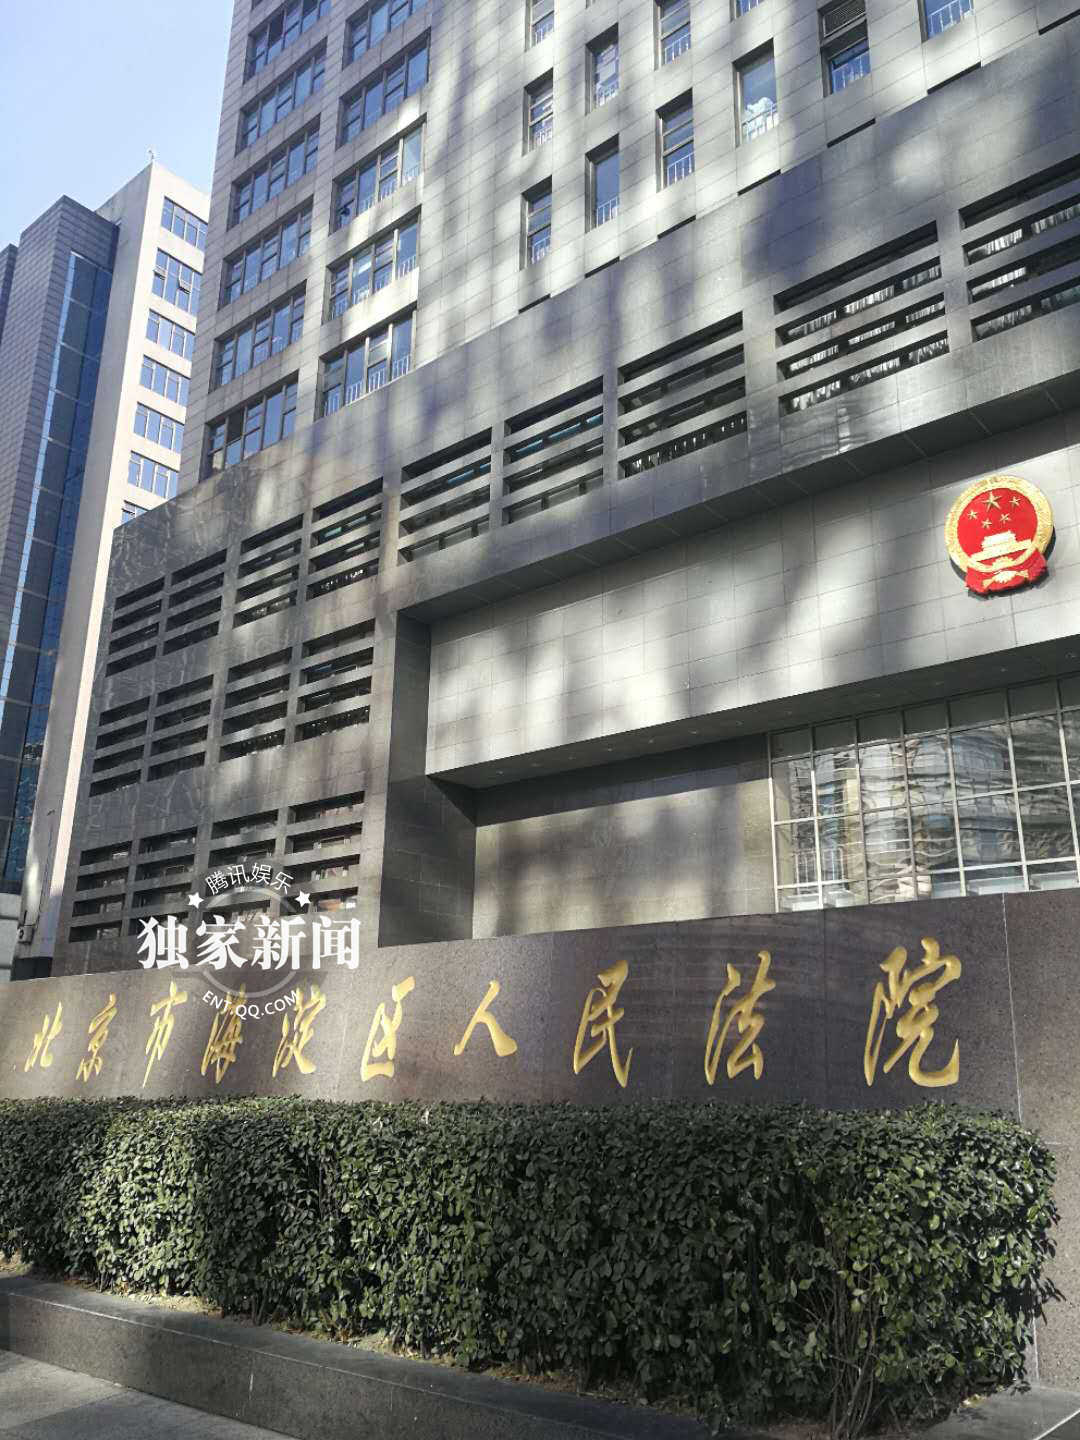 马苏赴北京海淀区法院状告黄毅清诽谤 提交证